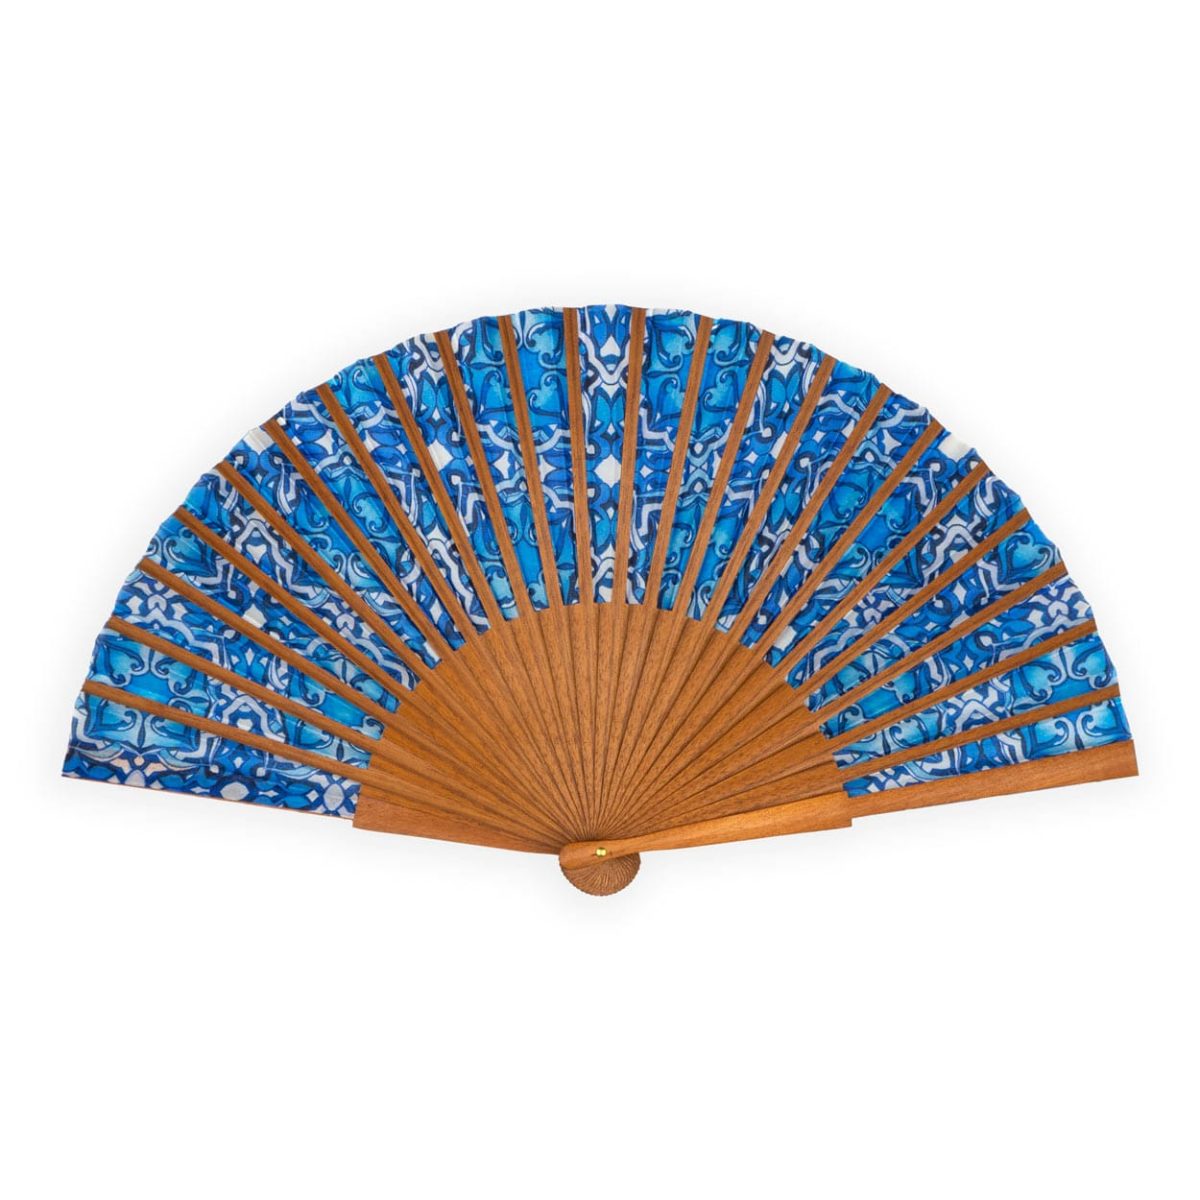 Blue silk fan inspired by moorish art